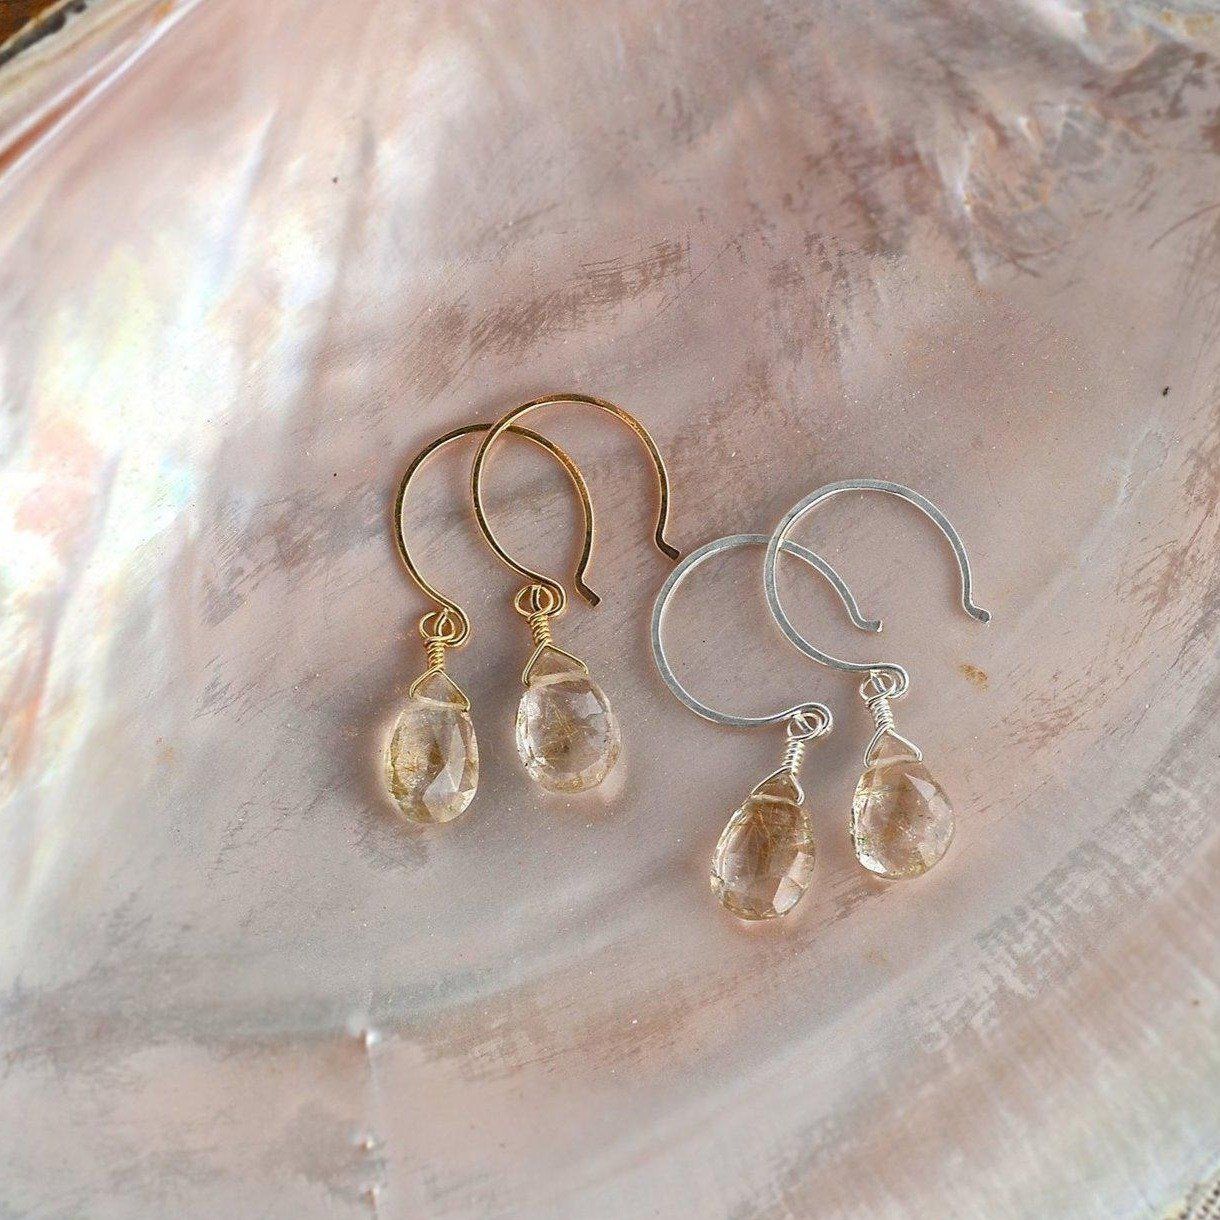 Shimmer Earrings - gold rutilated quartz gemstone drop earrings - Foamy Wader